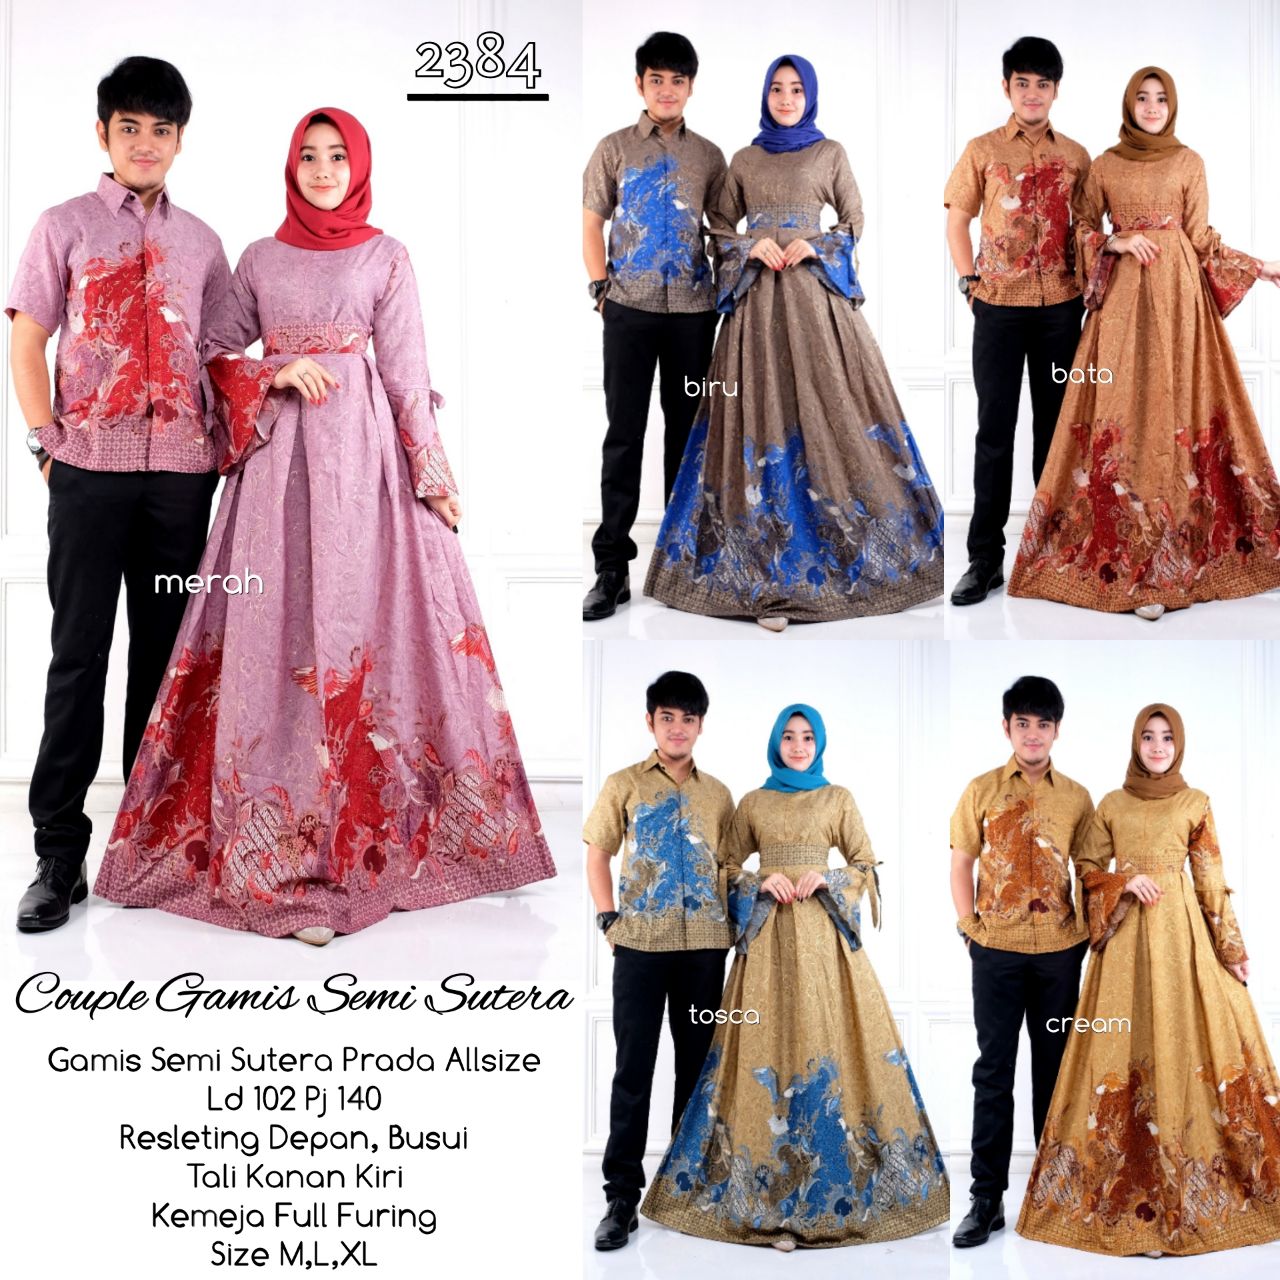  Model  Baju Batik  Gamis  Couple  D2384 Semisutera Batik  